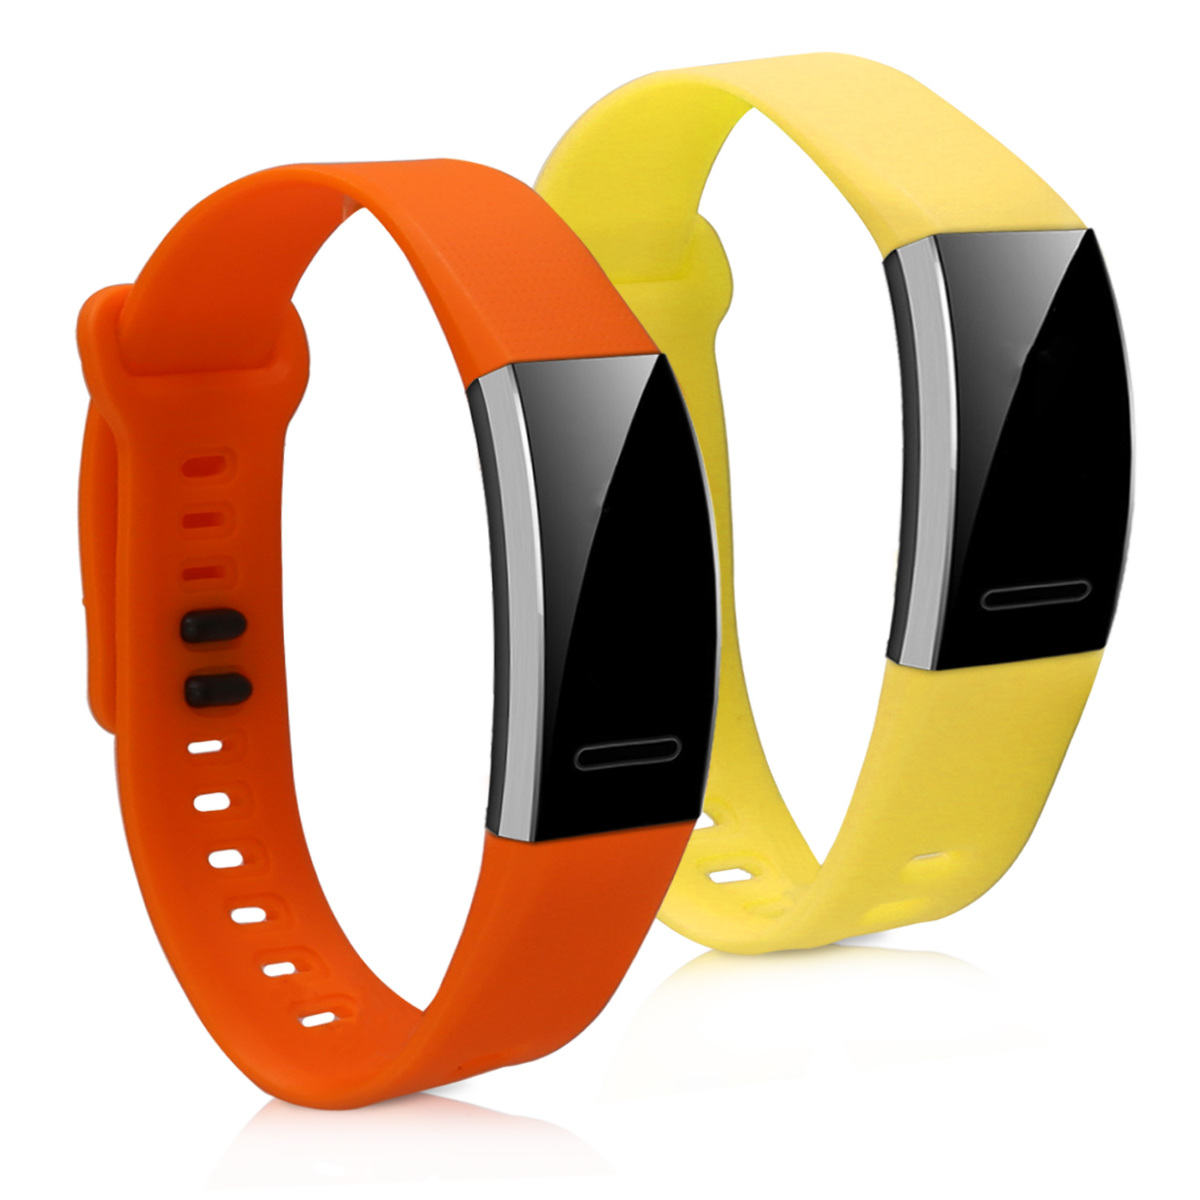 Řemínky na hodinky pro Huawei Band 2 / Band 2 Pro - Žlutá / oranžová